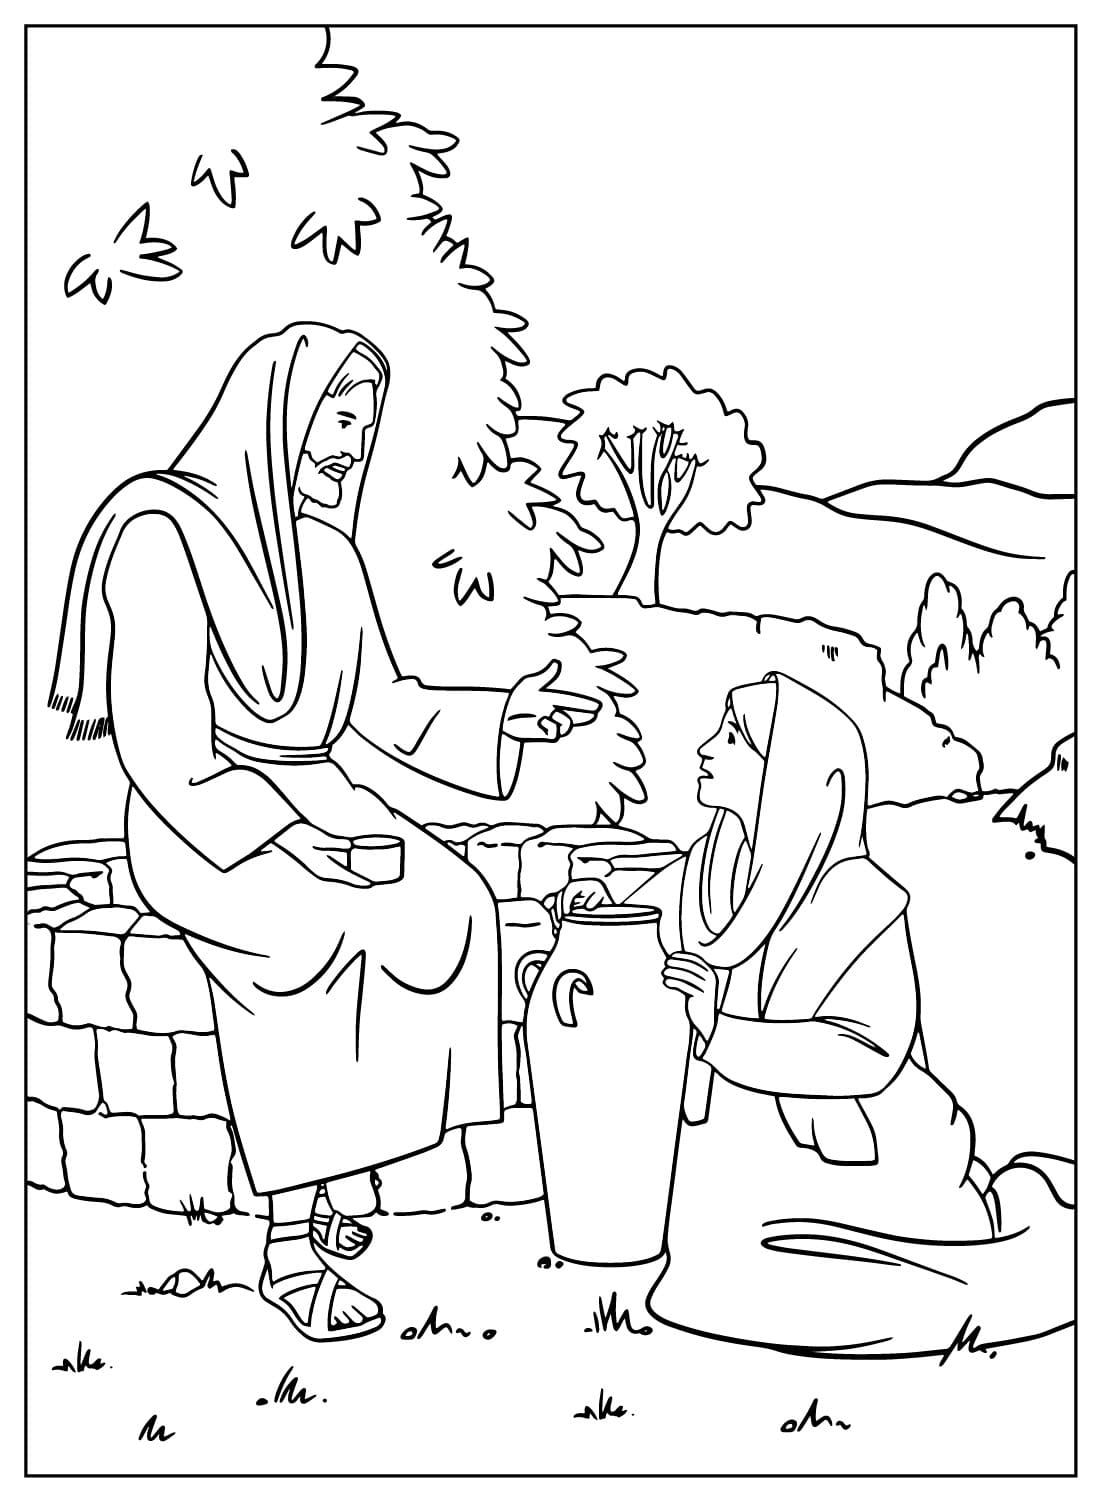 طلب يسوع من المرأة السامرية أن تشرب ماء من يسوع